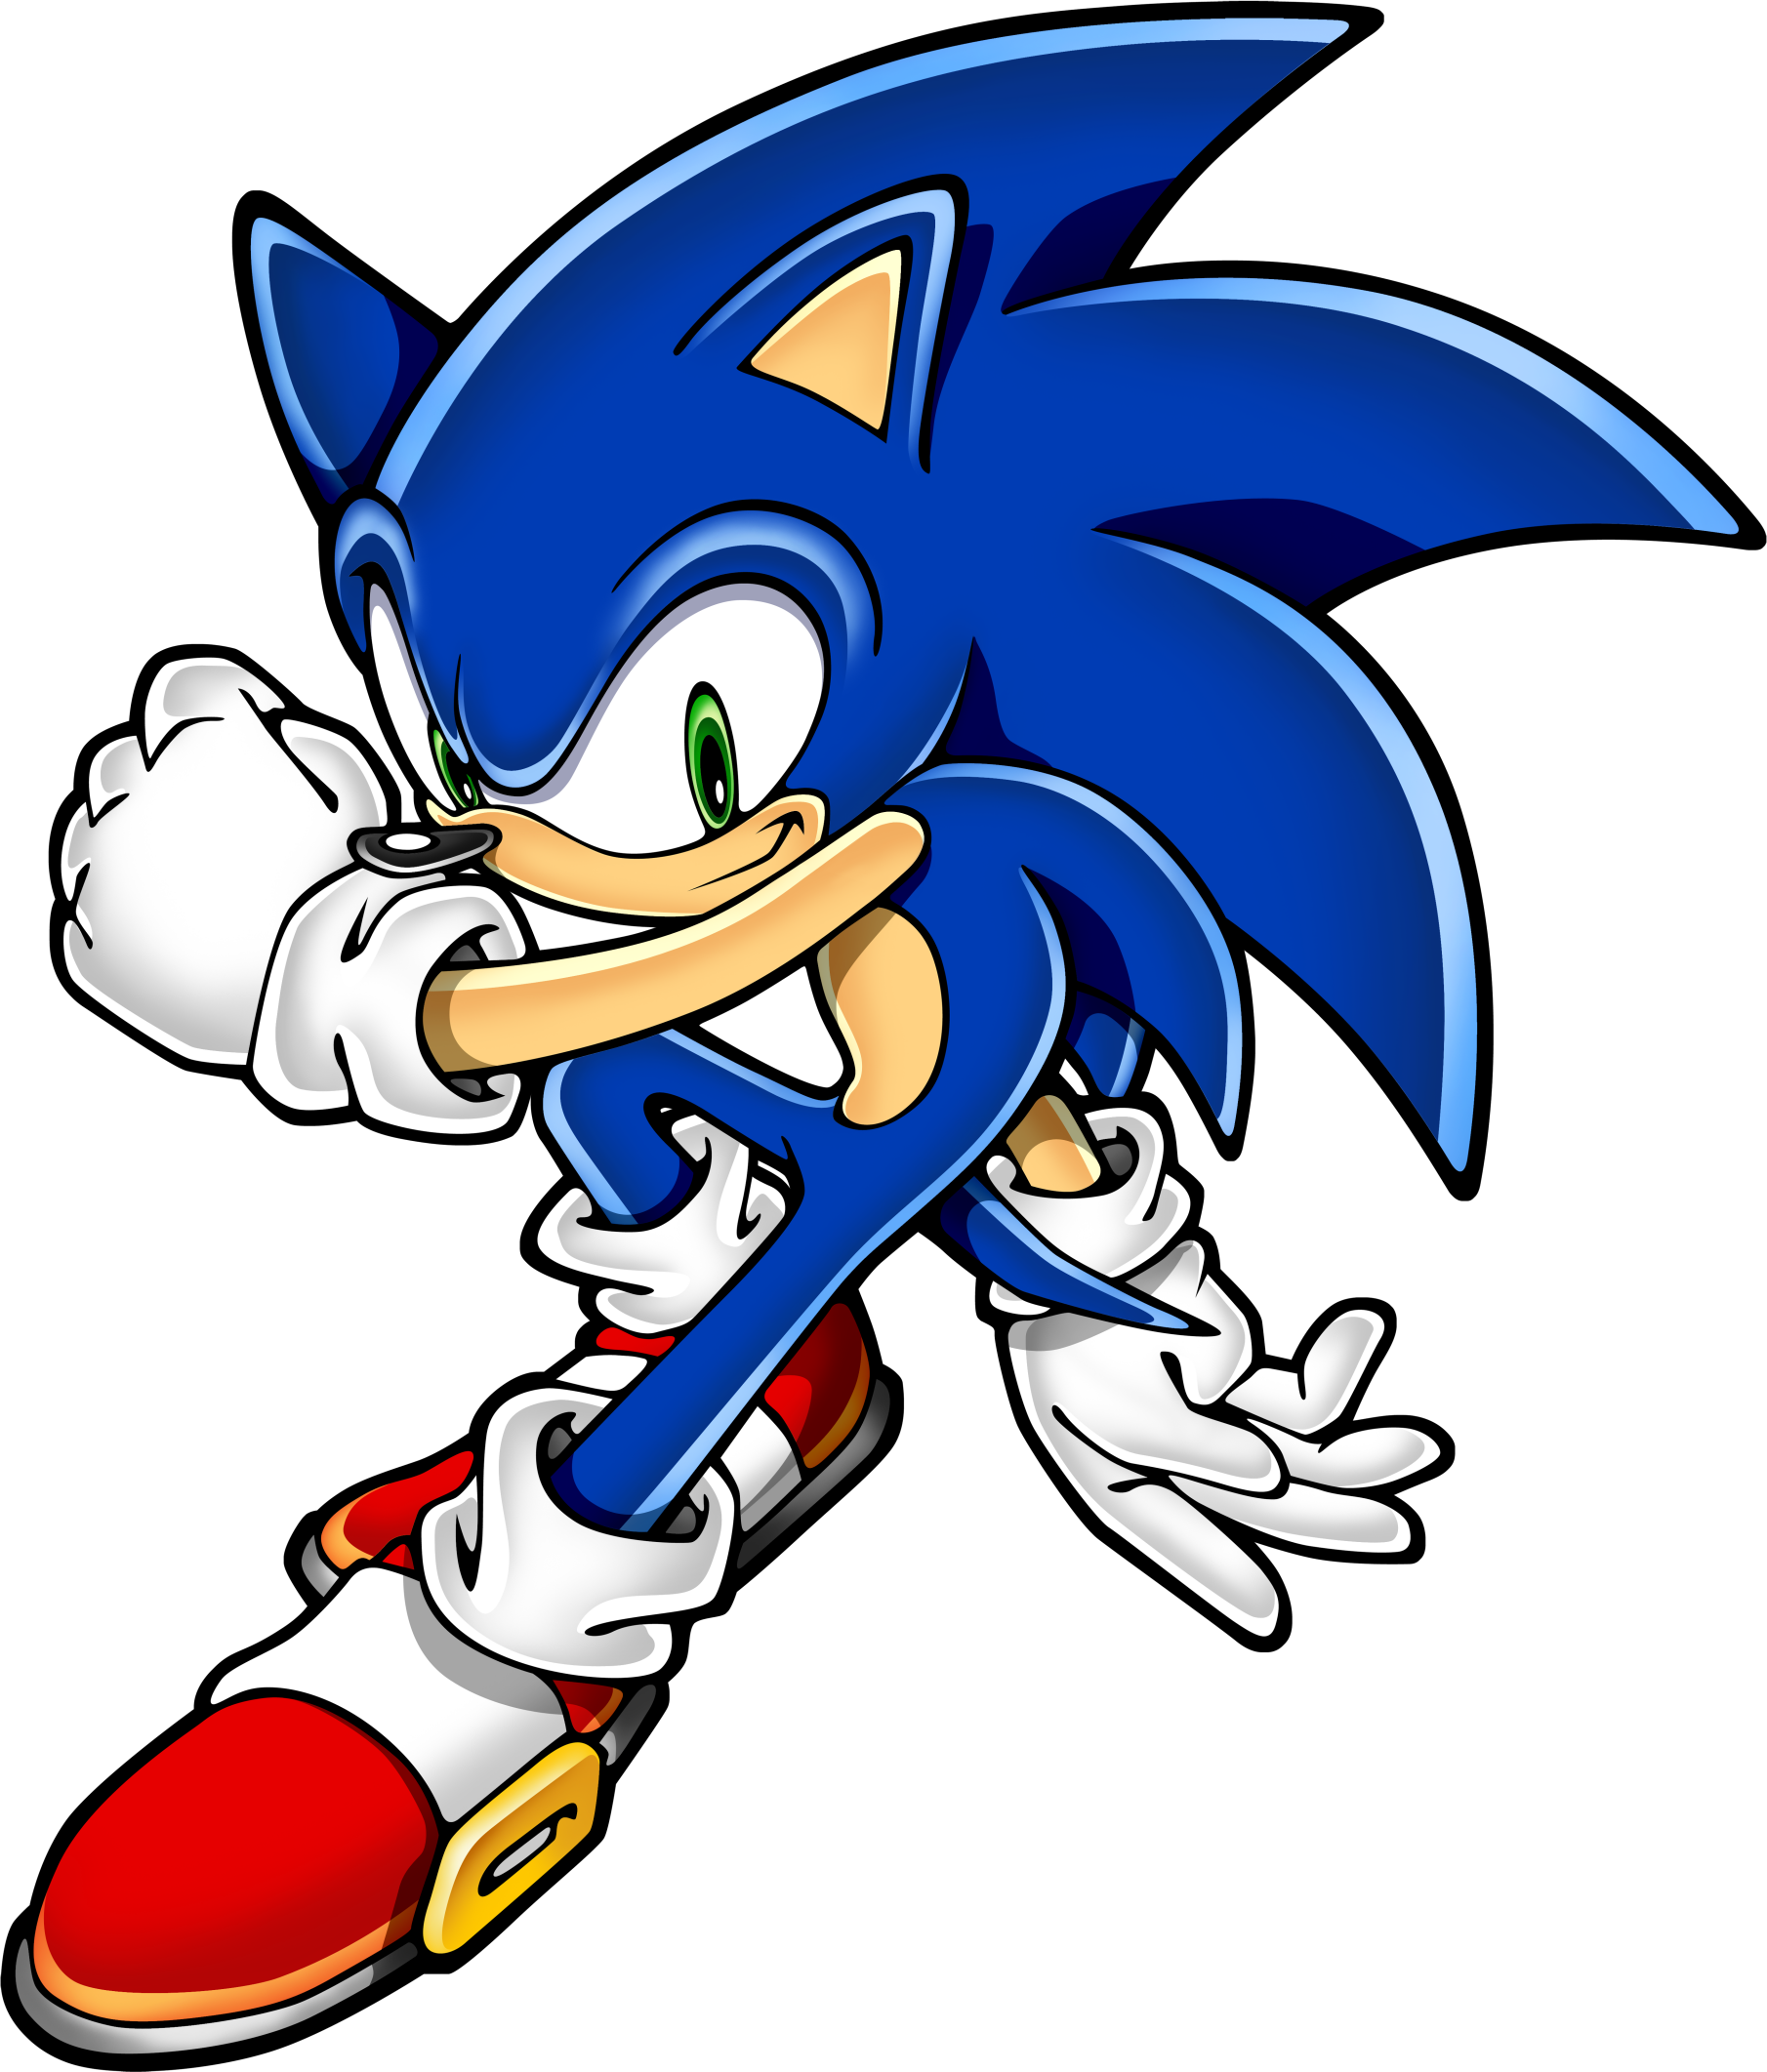 Sonic The Hedgehog Png Sonic The Hedgehog Png Transparent Image